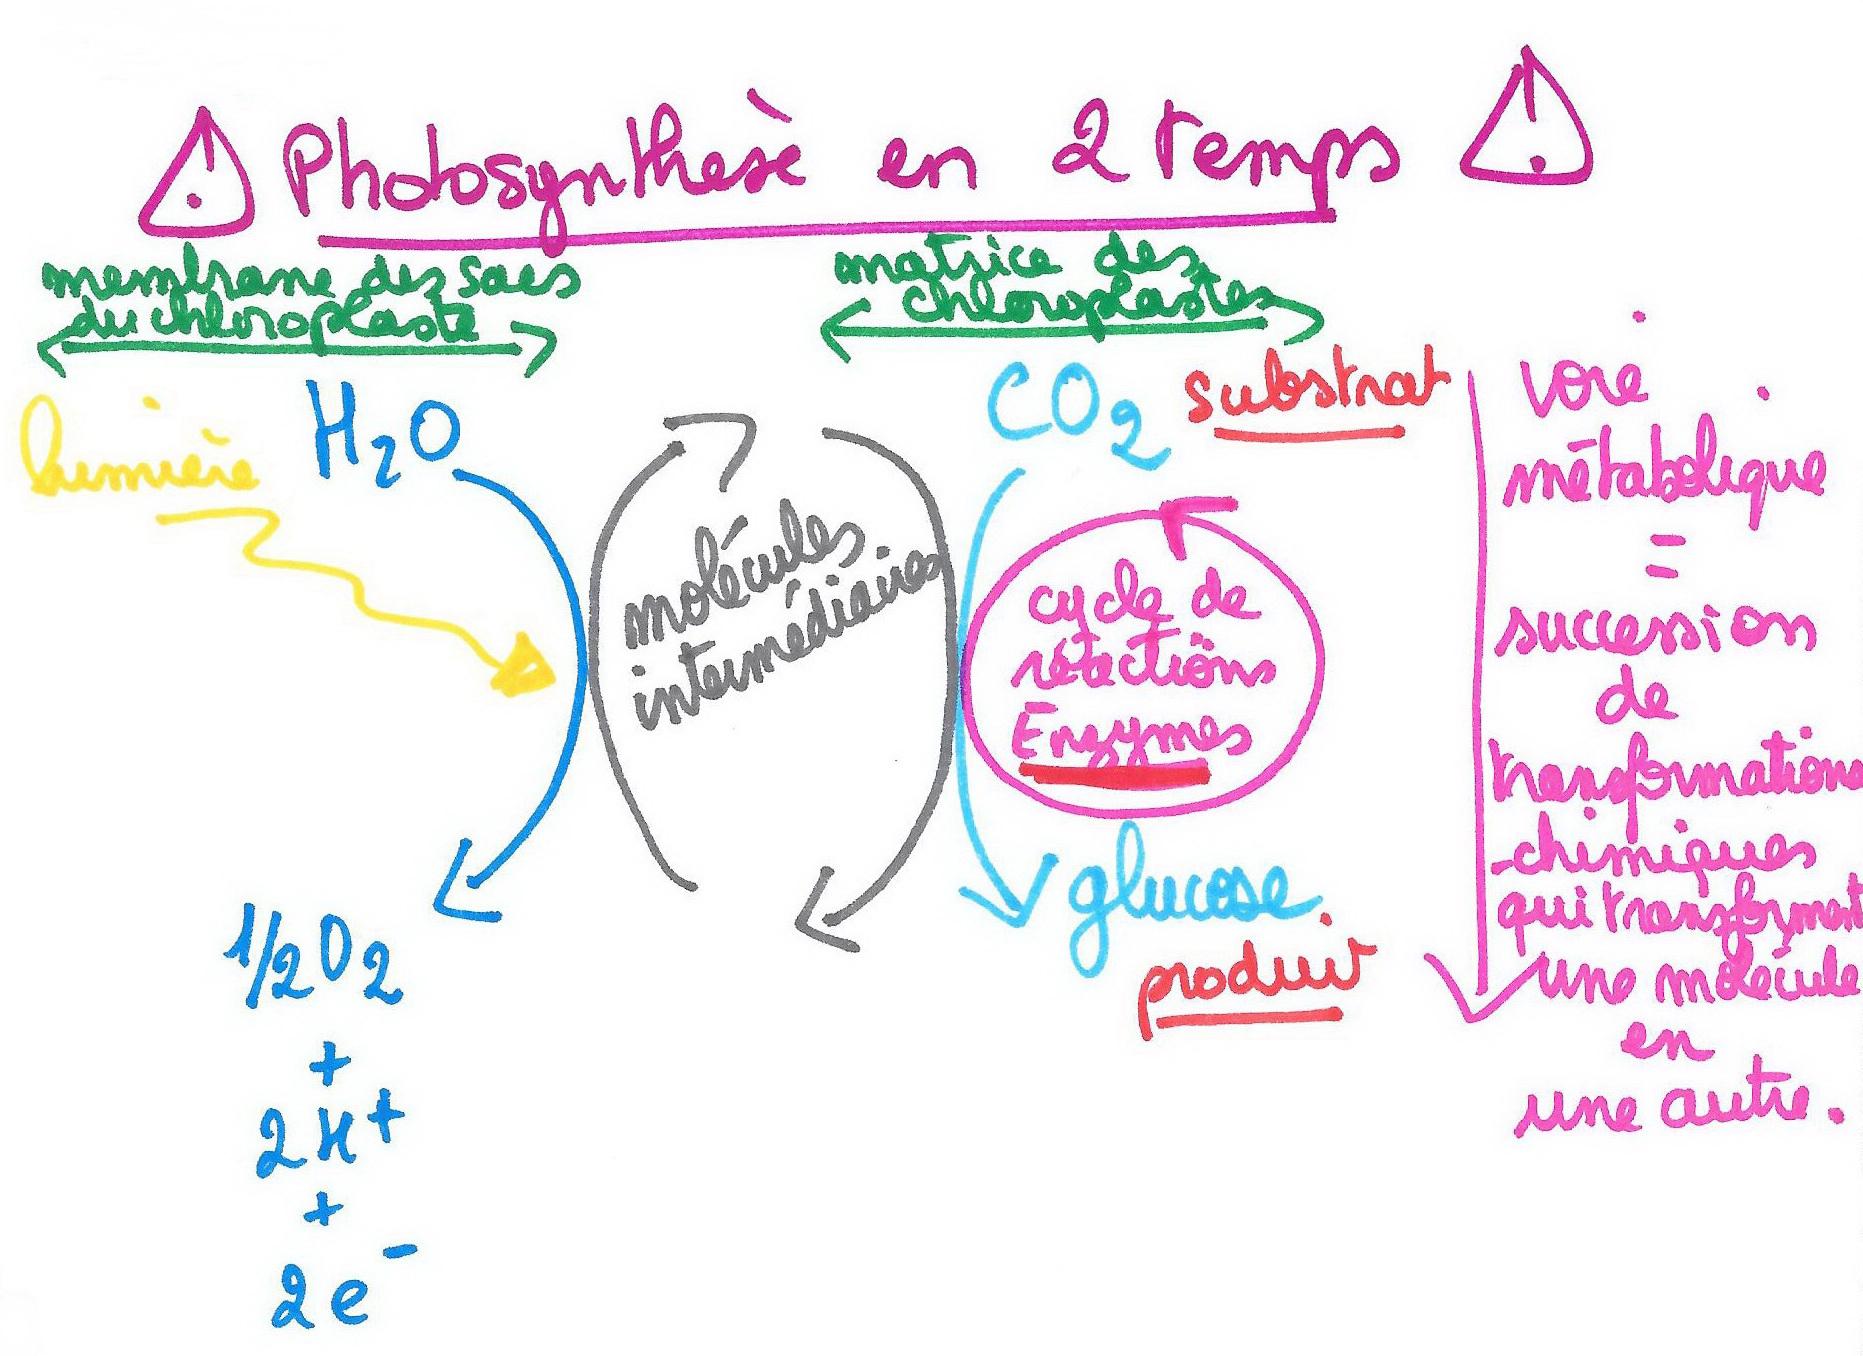 Photosynthese deux etapes